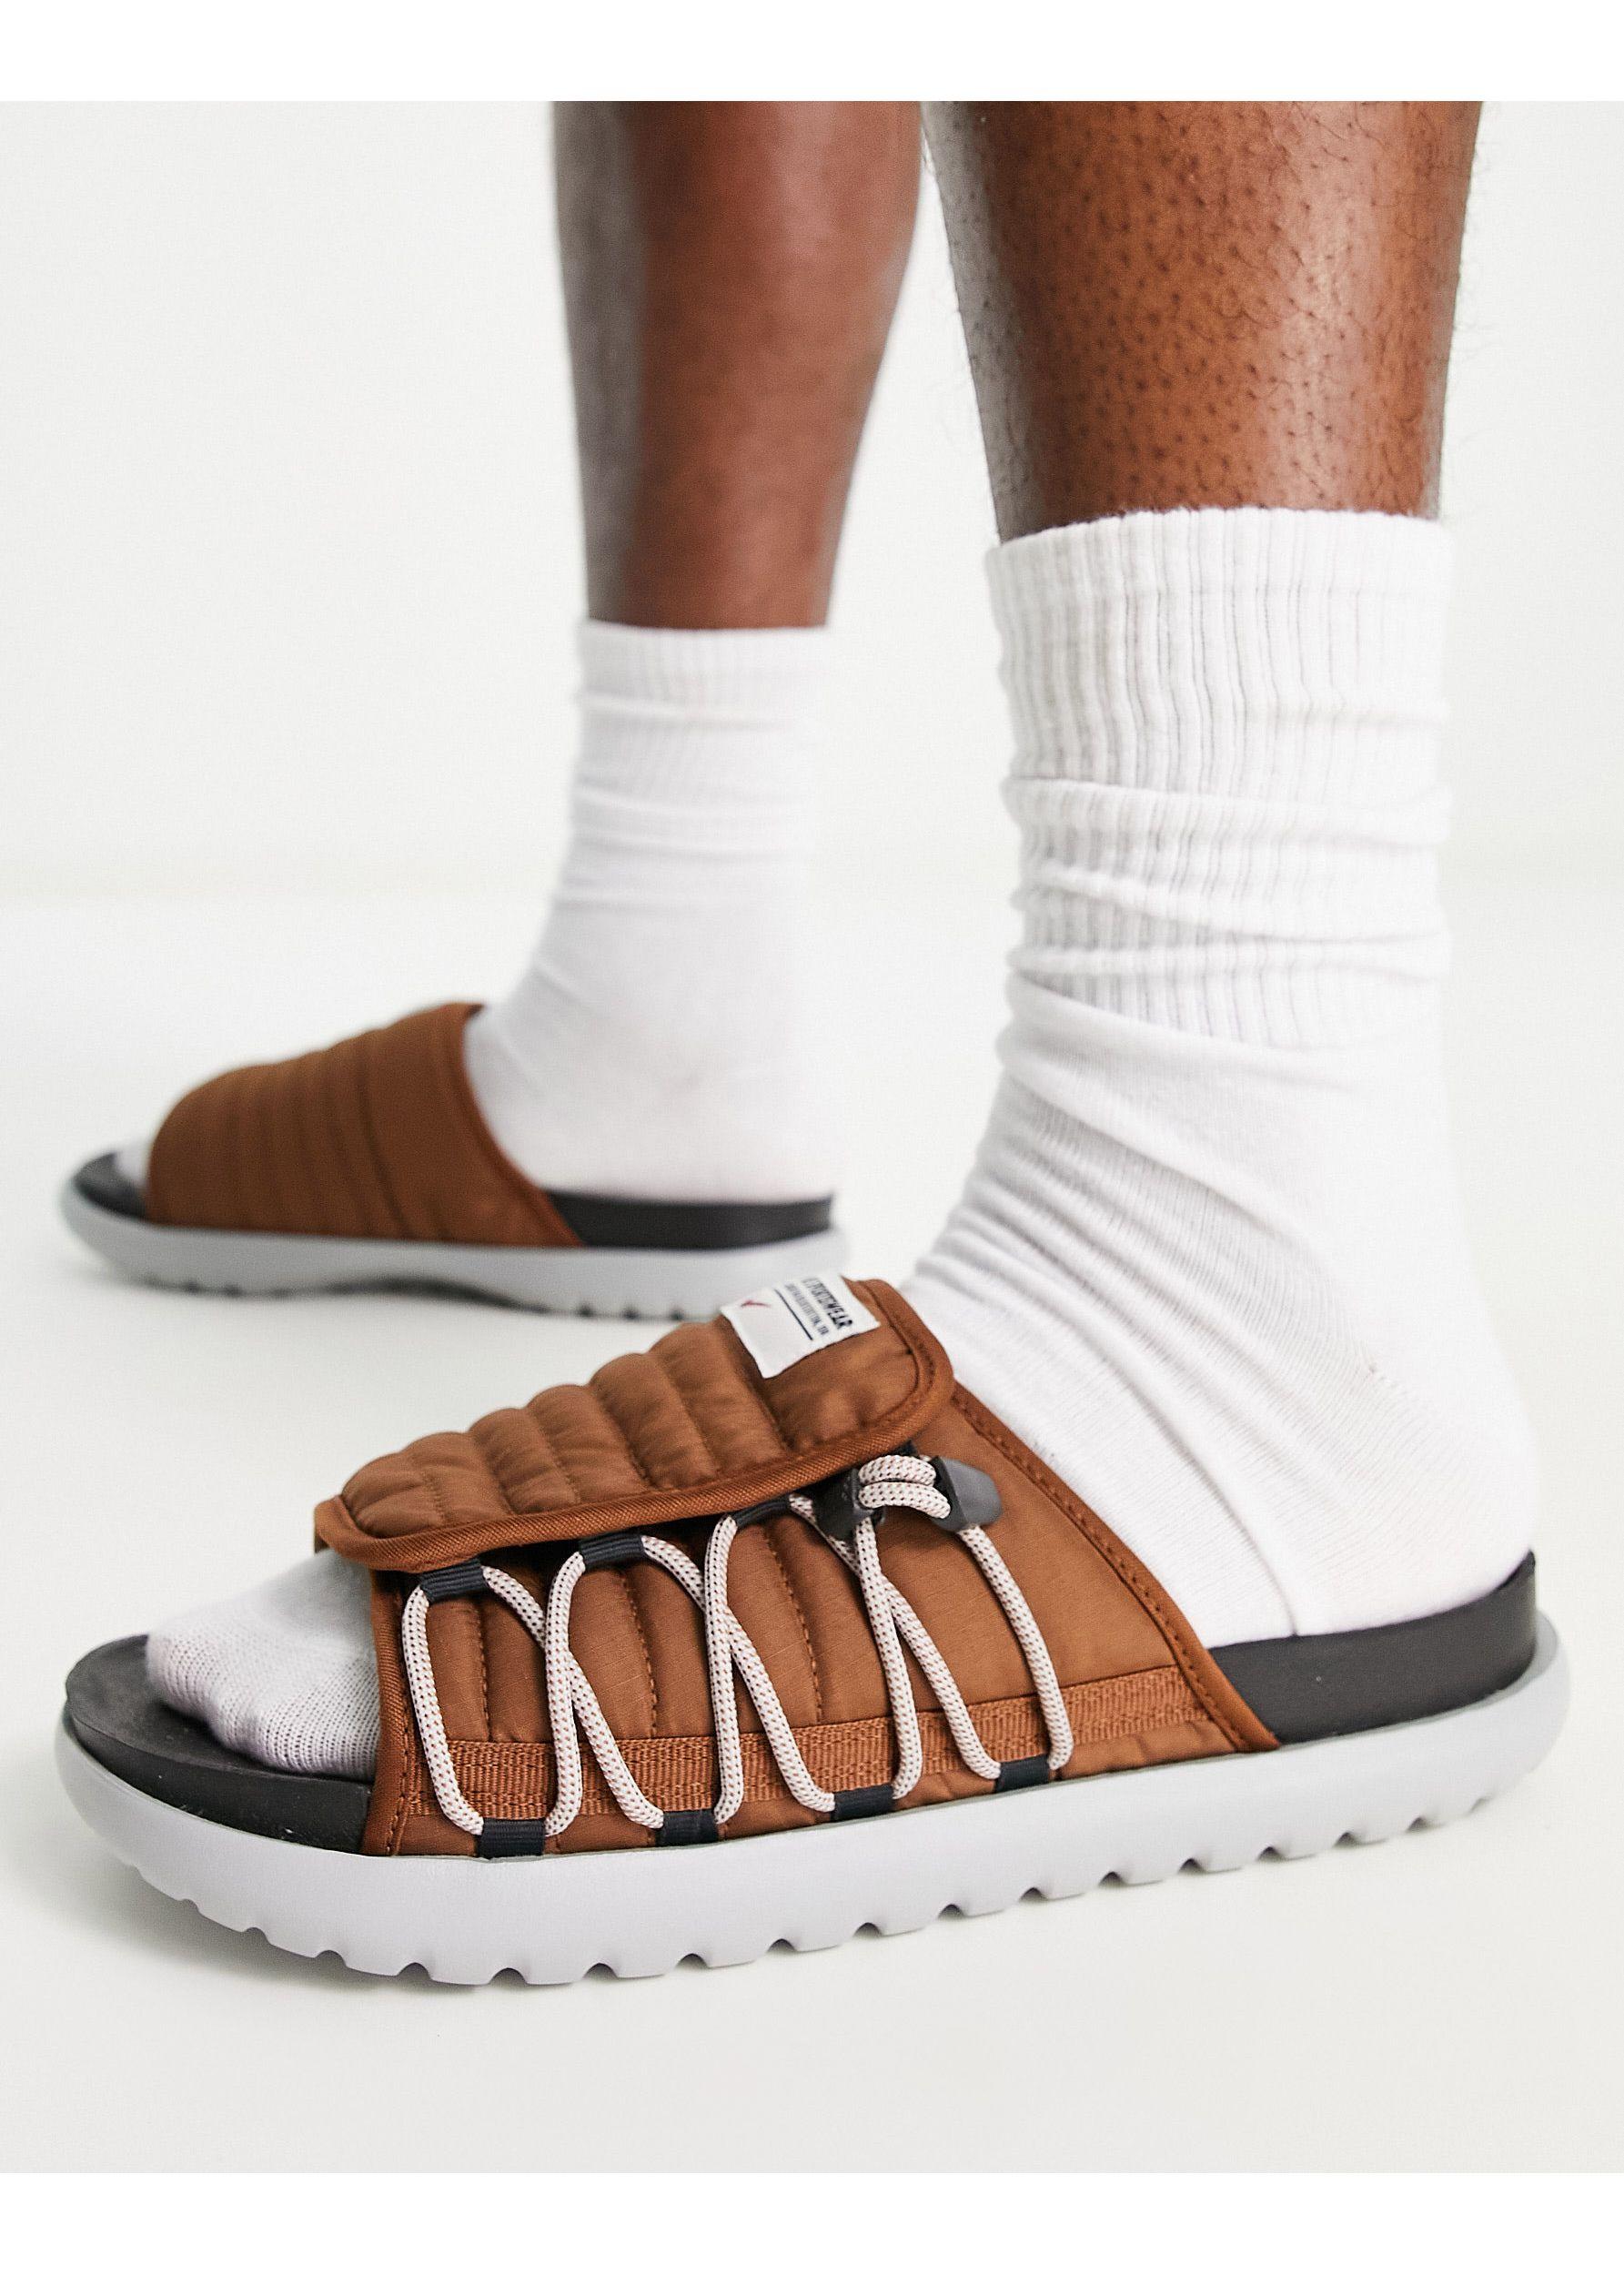 Sandalias color nuez pecana asuna 2 Nike de hombre de color Marrón | Lyst